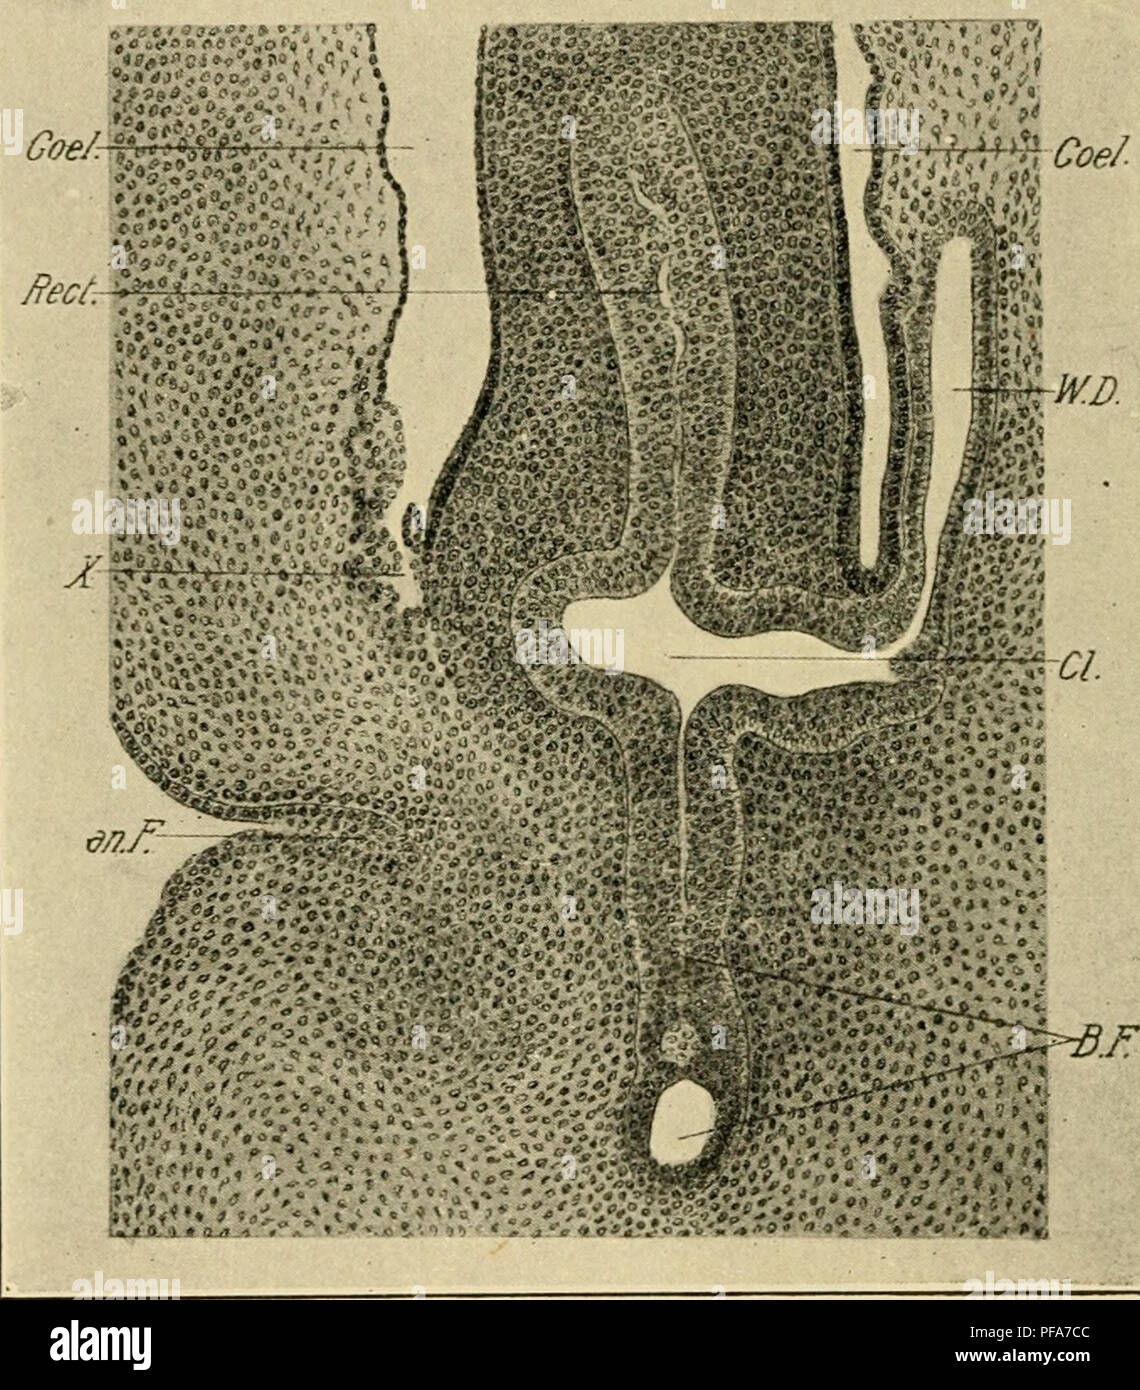 . Die Entwicklung der Küken: eine Einführung in die embryologie. Embryologie; Hühner - Embryonen. 316 DIE ENTWICKLUNG DER KÜKEN Membrana cloacalis, ist der Hals der Allantois und dorsal, den Dickdarm. Obwohl nicht in der Abbildung dargestellt, es kann angemerkt werden, dass die Wolff'schen Kanäle offen in die Kloake hinter und dorsal die Eröffnung des Rektums. Das Erscheinungsbild der Kloake in einem Längsschnitt bedeutet jedoch nicht, geben eine angemessene Idee von ihrer Form. Den vorderen Teil der Kloake, empfängt das Rektum, Stiel des allantois und Wolff'schen Kanälen erheblich erweitert in Stockfoto